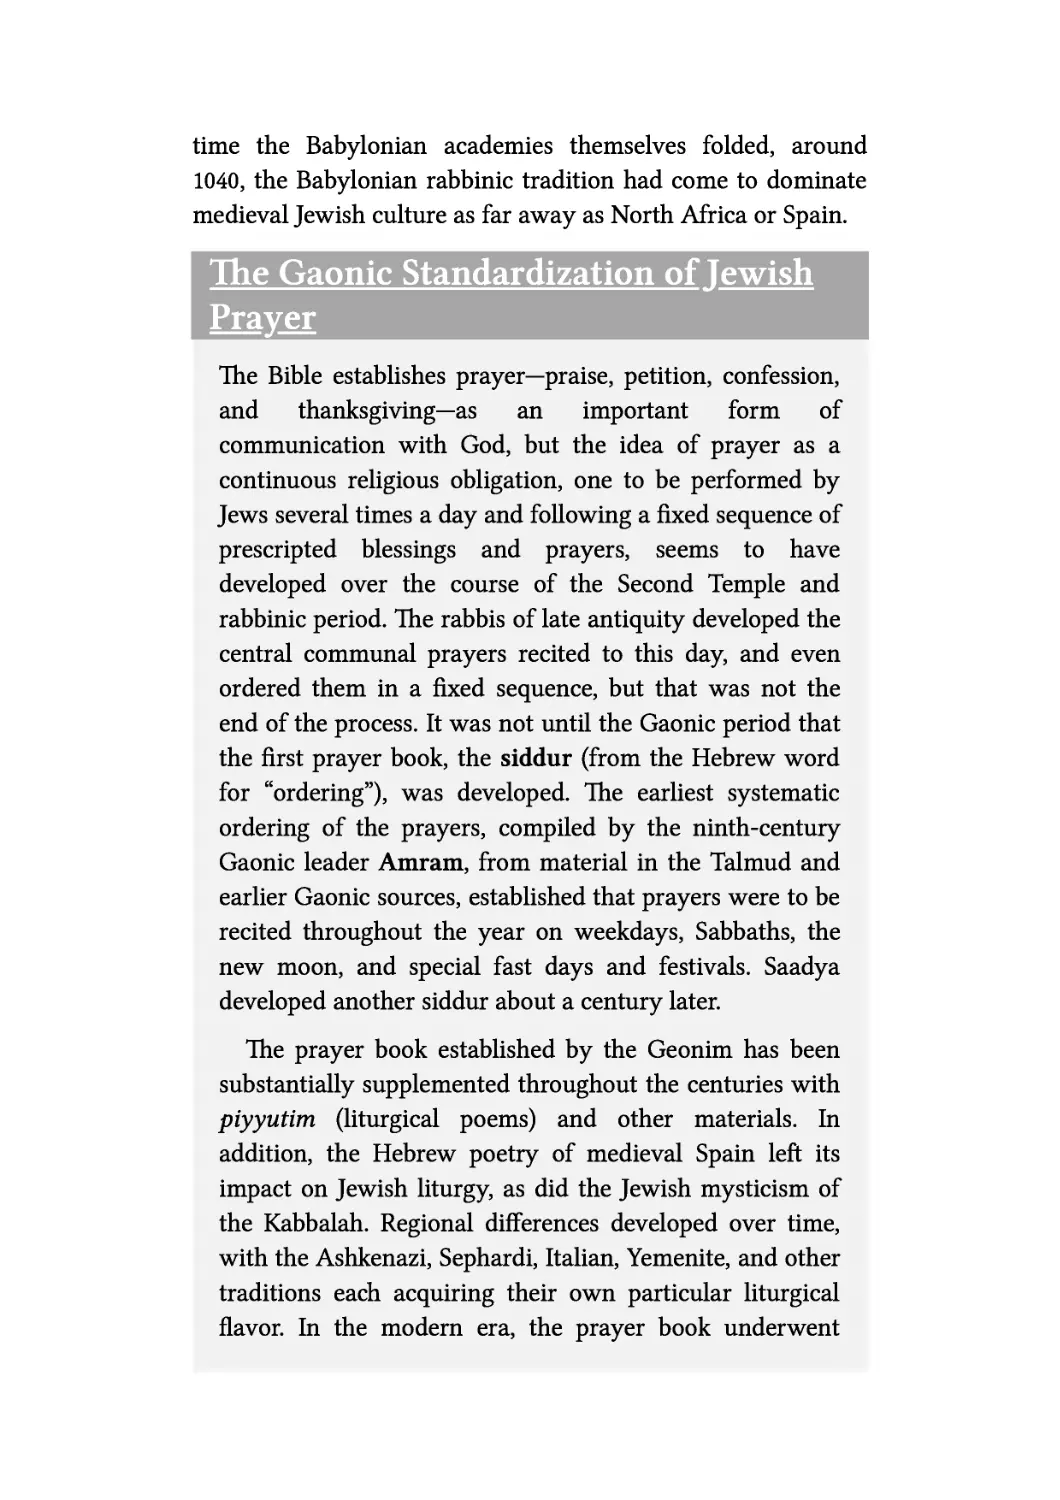 The Gaonic Standardization of Jewish Prayer